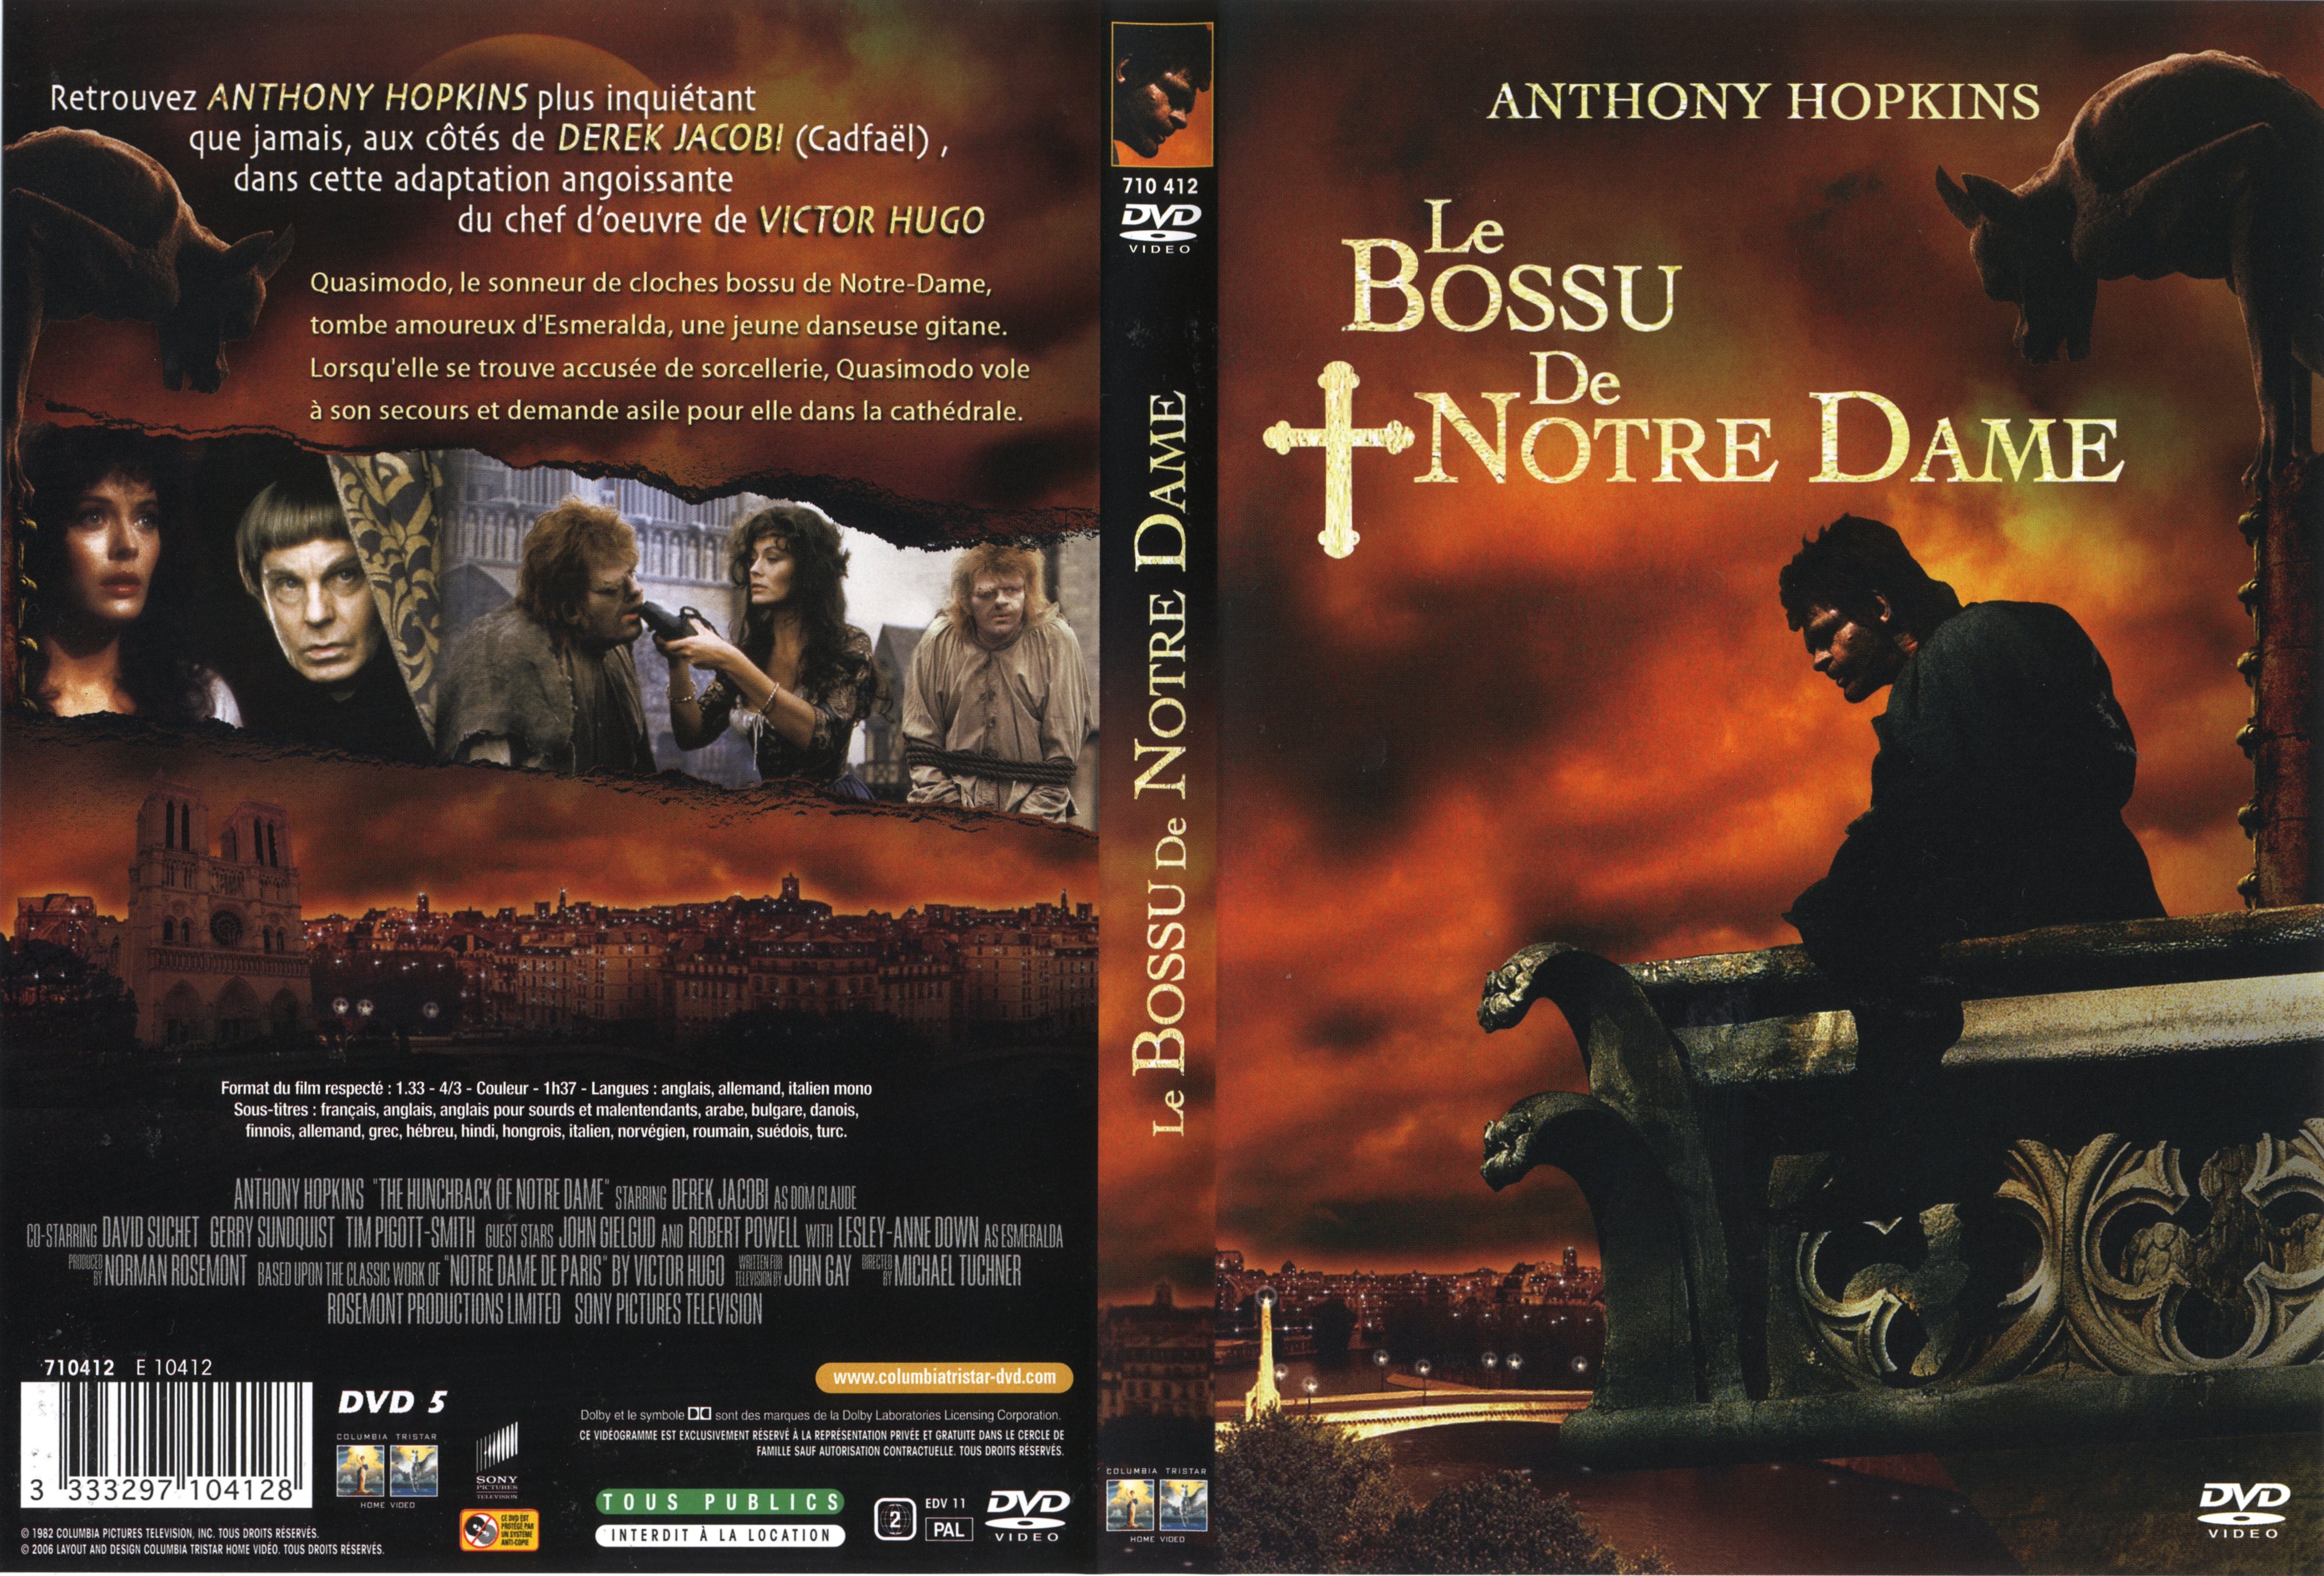 Jaquette DVD Le bossu de Notre-Dame (Anthony Hopkins)